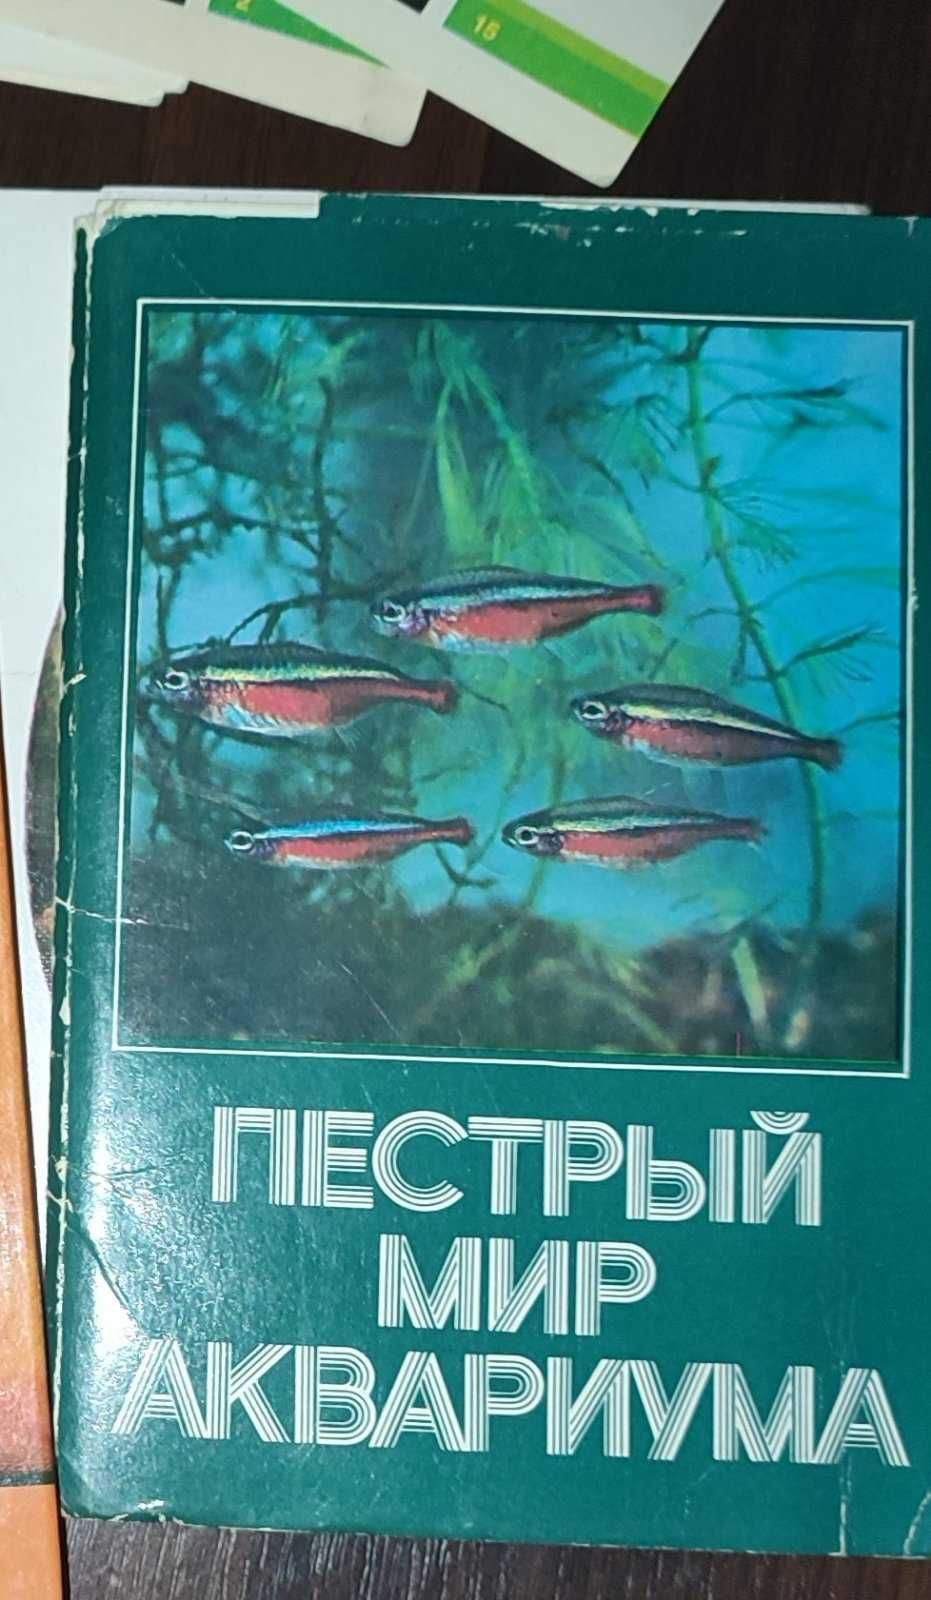 Наборы открыток советских времён.Книги со стихотворениями,песнями